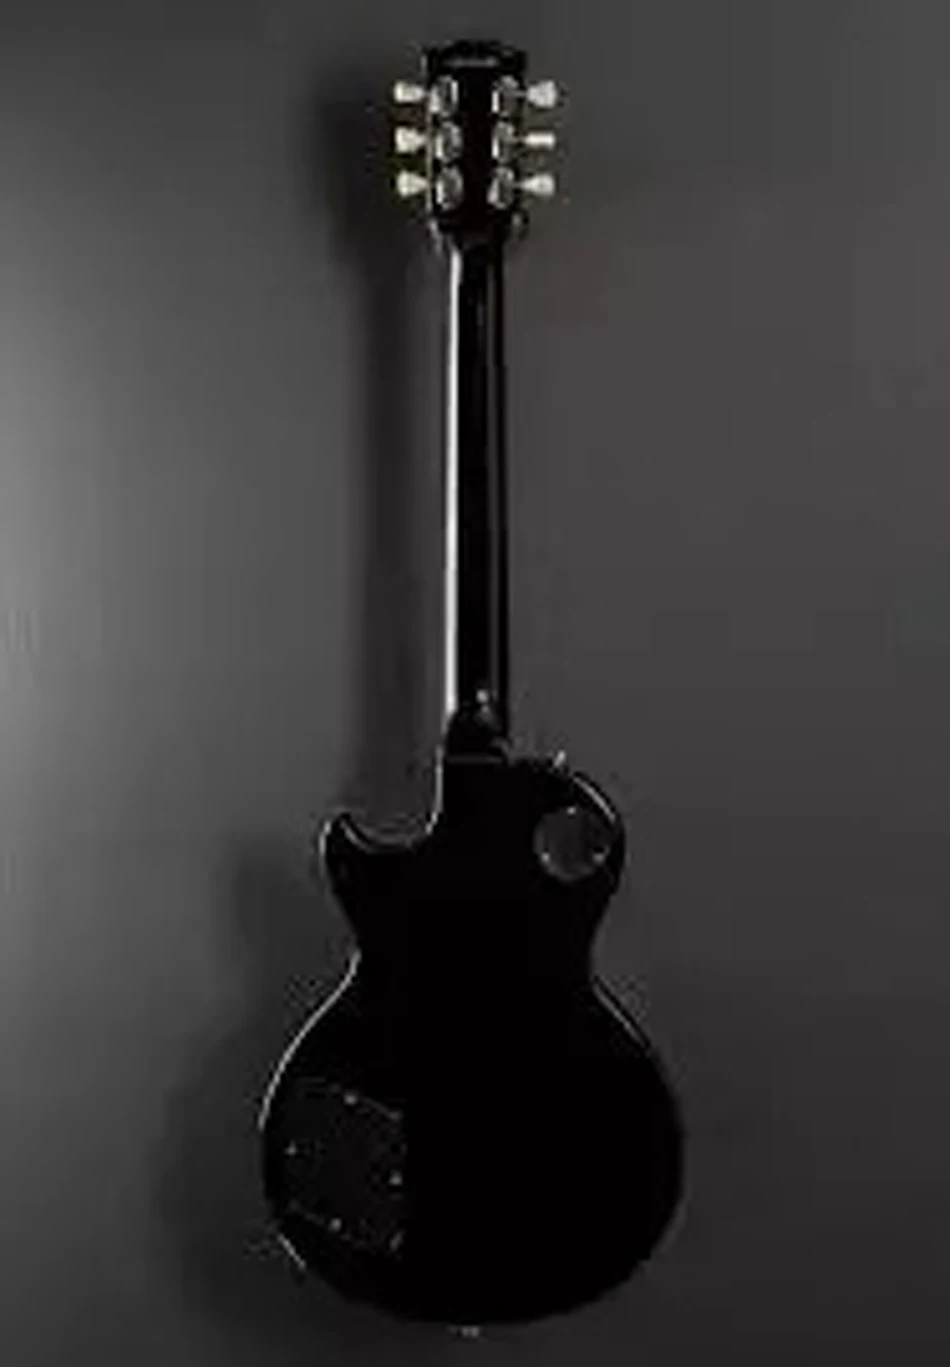 Редкая черно-желтая электрическая гитара Джо Перри Boneyard 1959, топ тигрового огня и клена, винтажная трапециевидная швабра с инкрустацией,